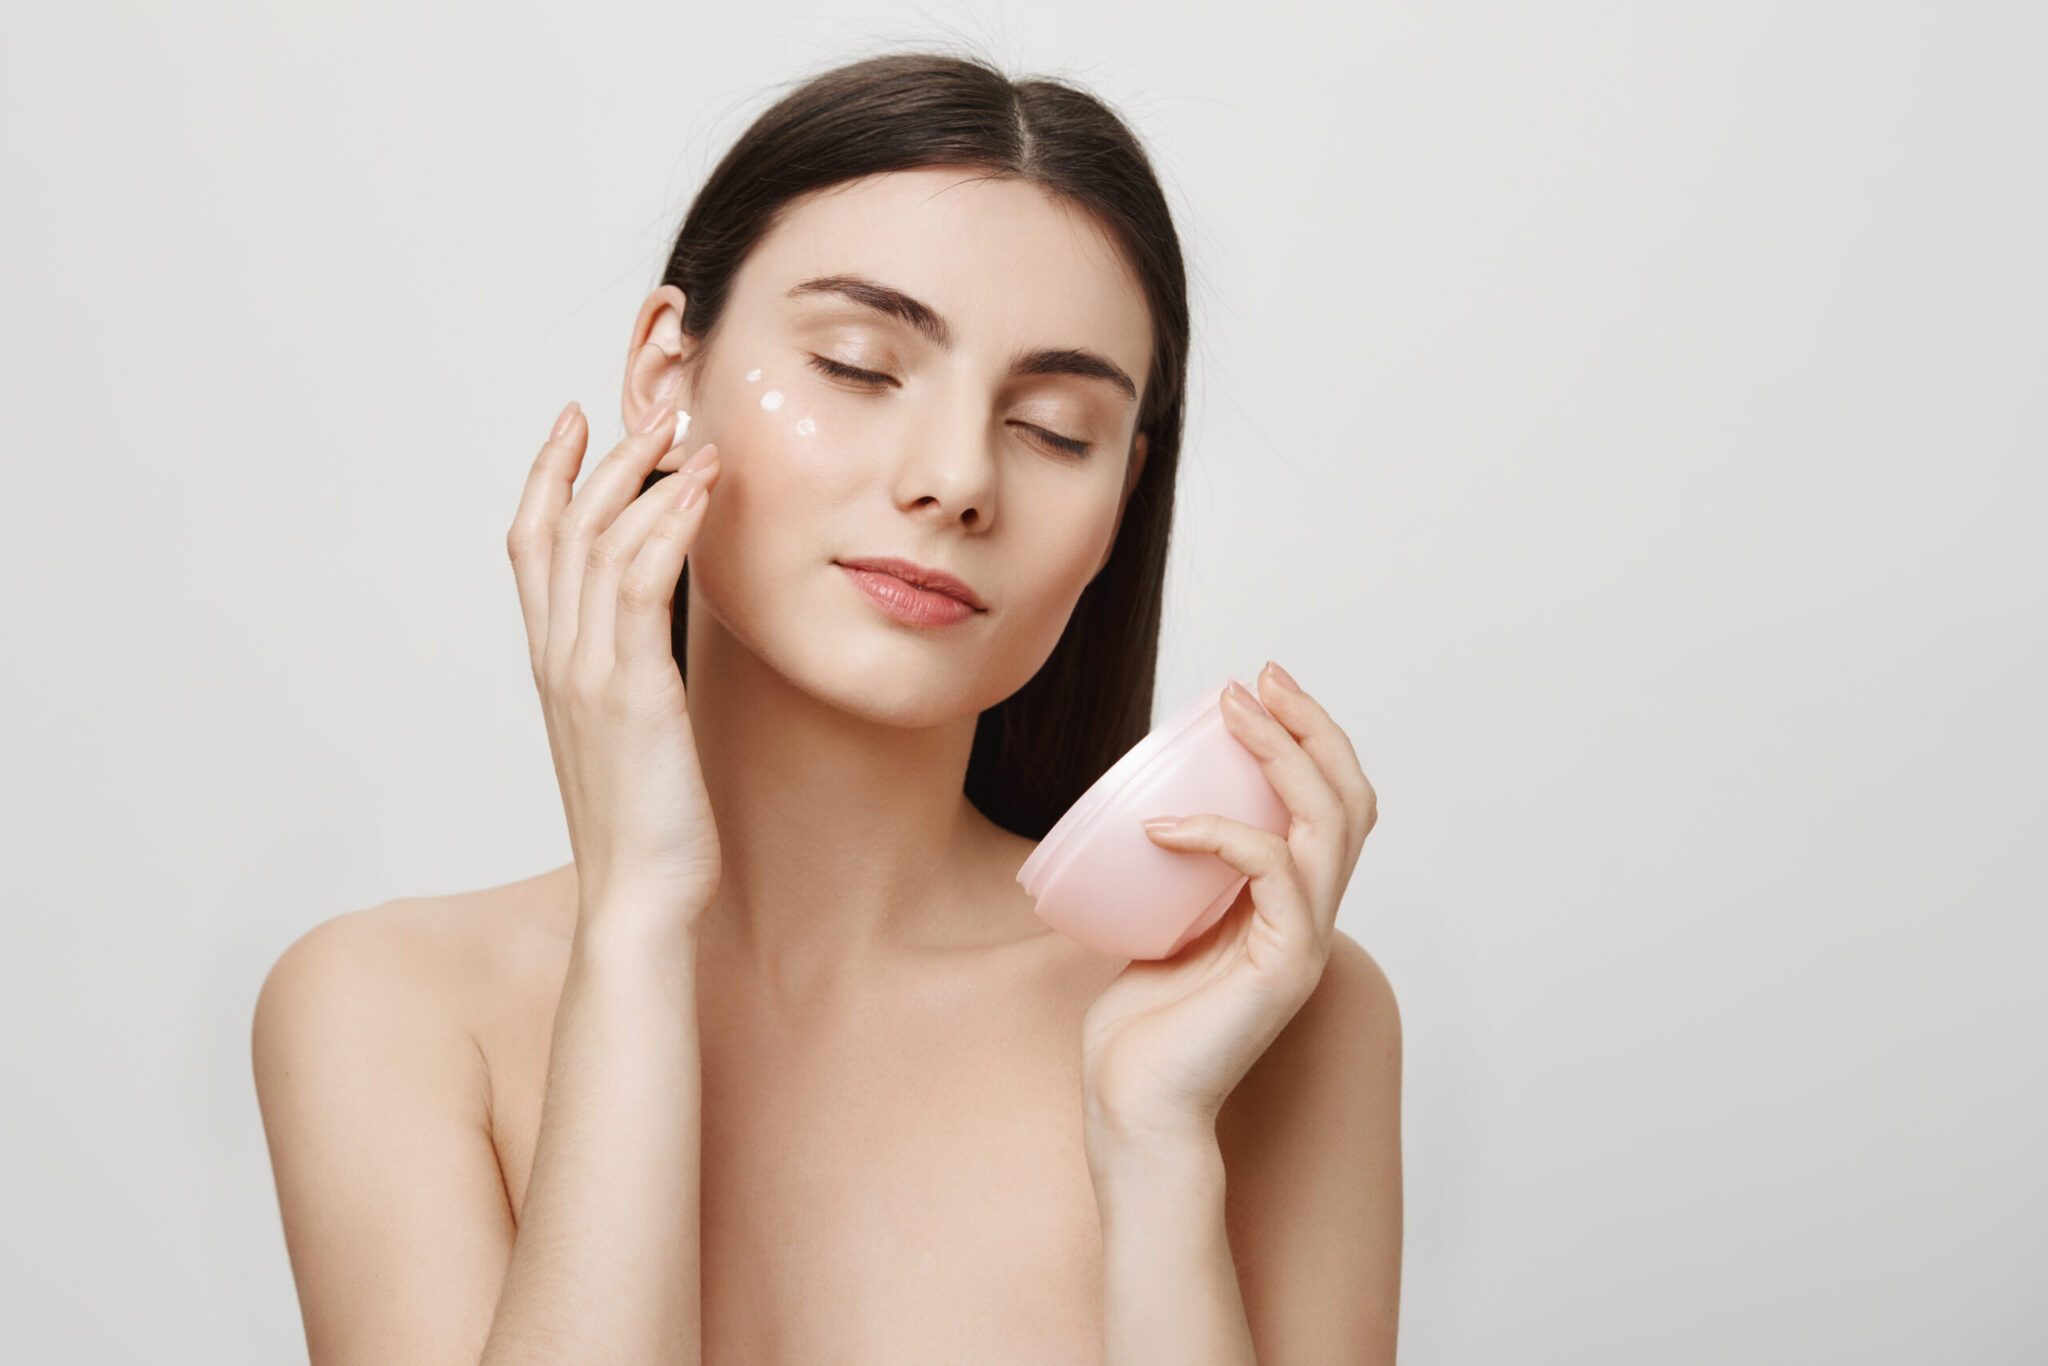 La protección solar y la celiaquía son malas para la piel: falsos mitos sobre el cuidado de la piel